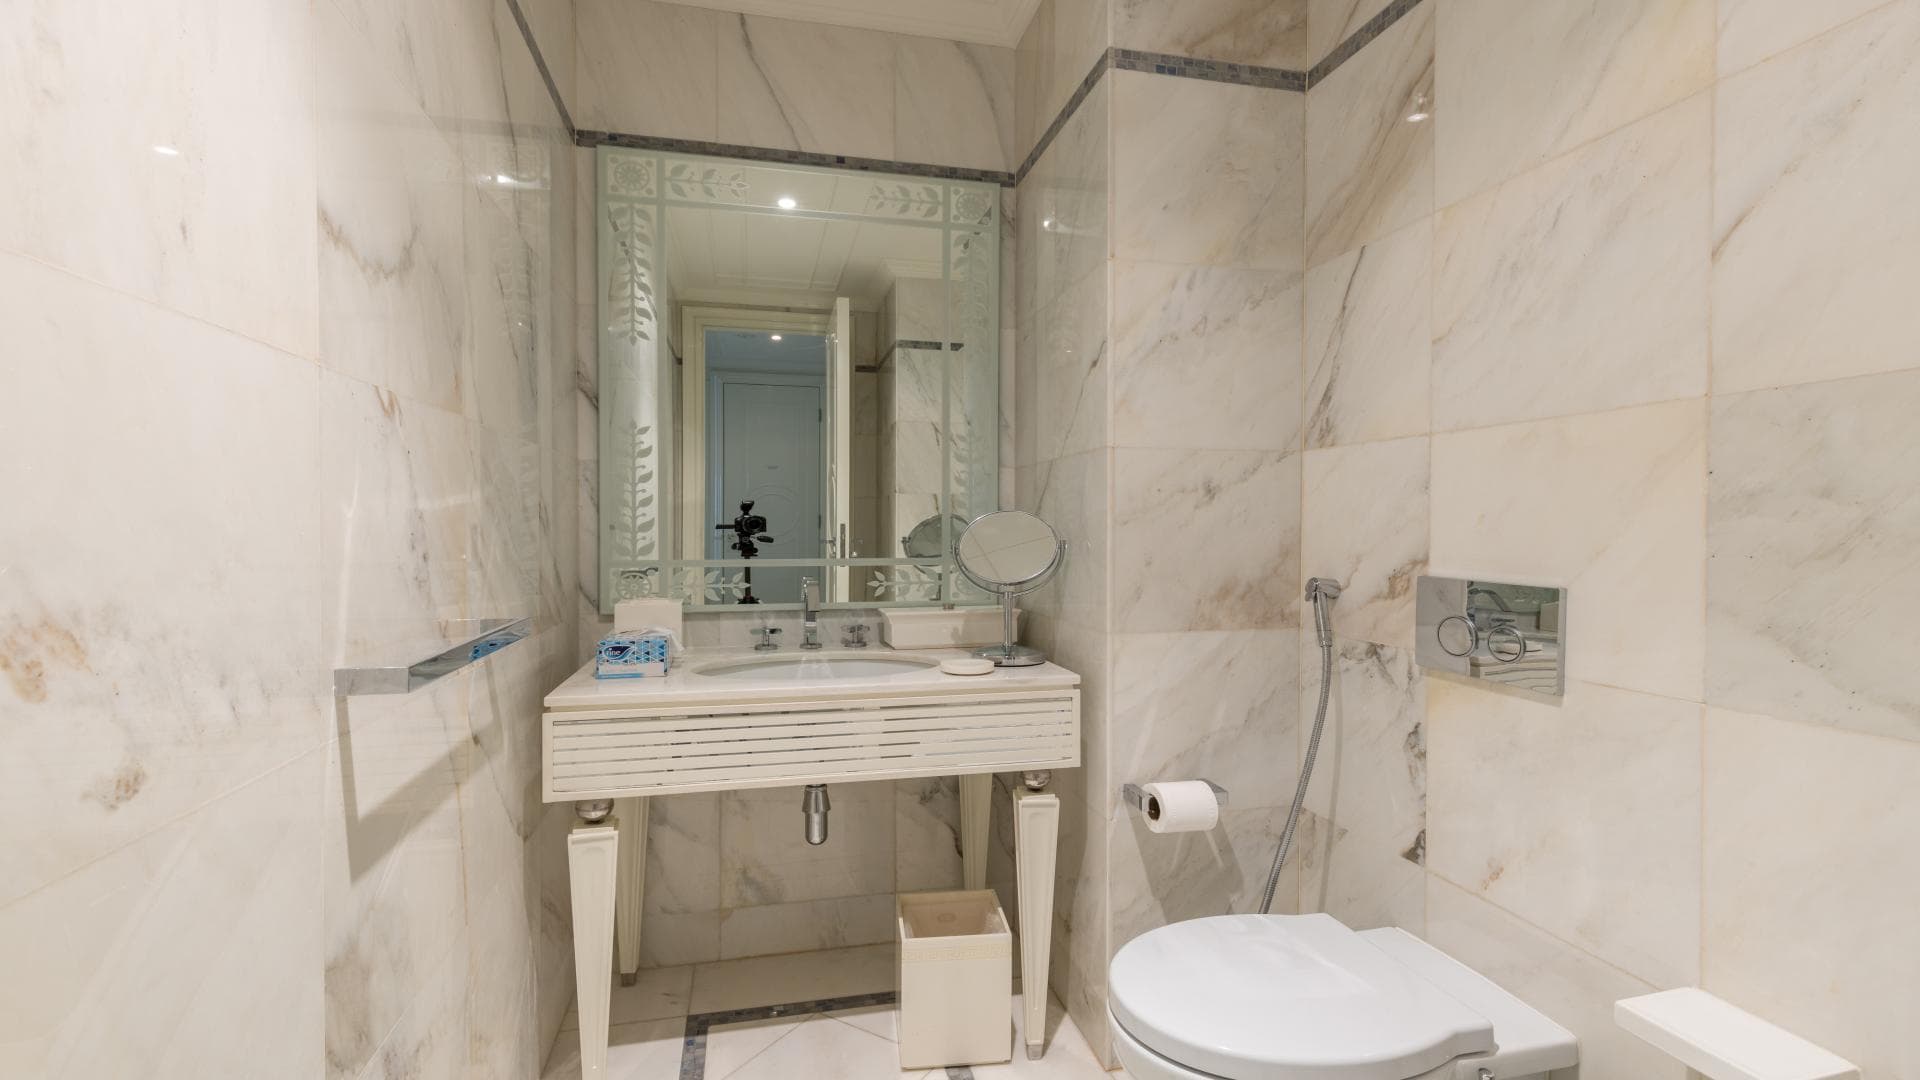 4 Bedroom Penthouse For Rent Palazzo Versace Lp14406 22da859f8ba47400.jpg